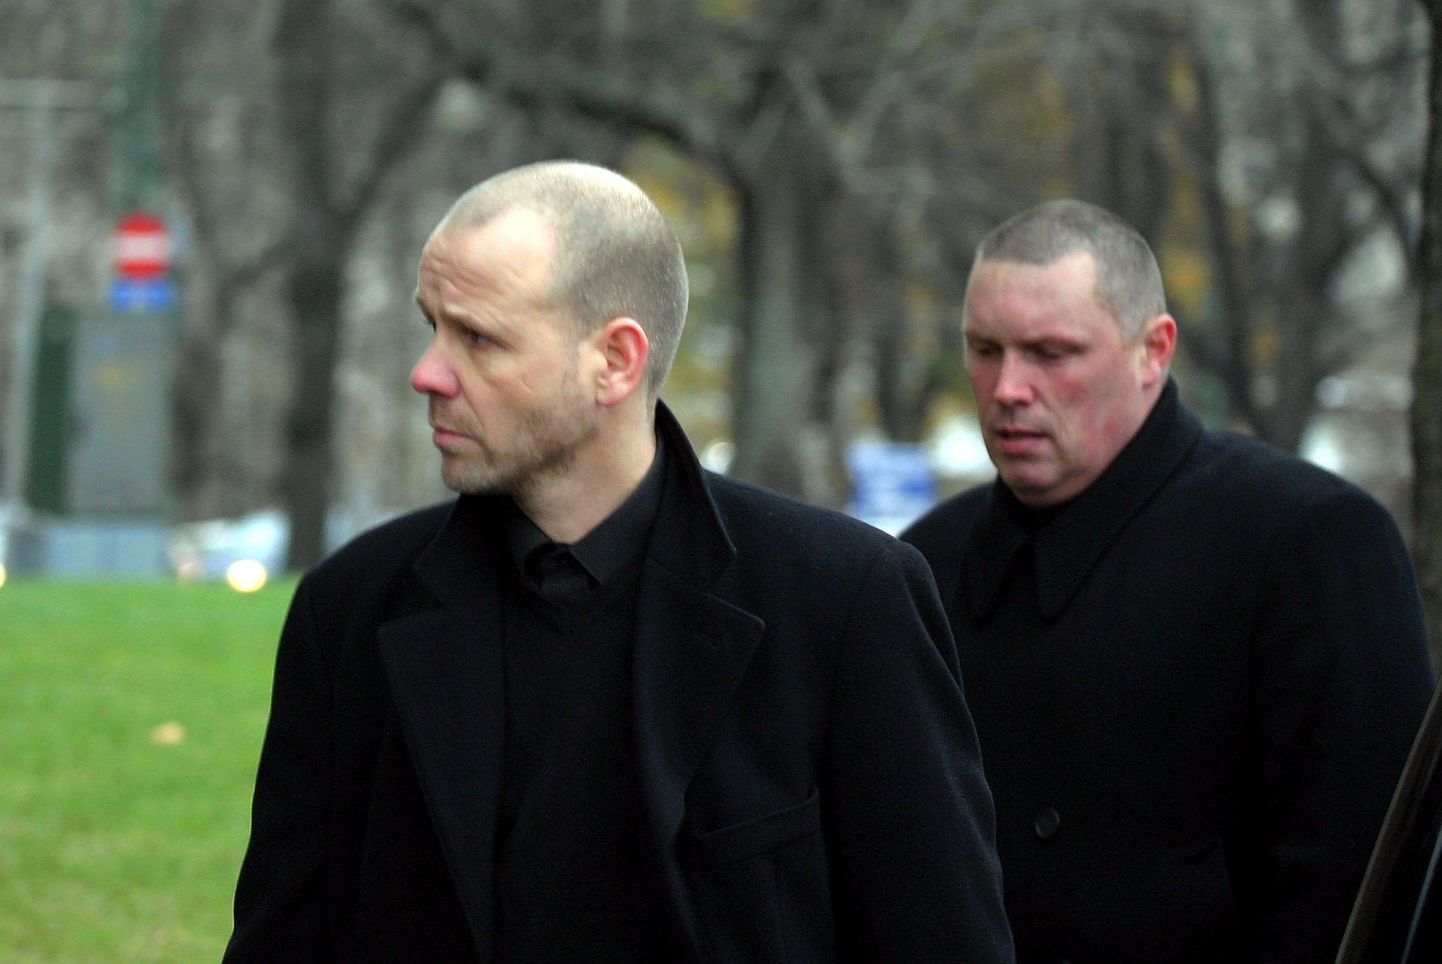 2000ndate keskel tapetud Kalev Kure matusel oli kohal Eesti allilma koorekiht, nende hulgas ka hiljuti vangi mõistetud Assar Paulus (vasakul).